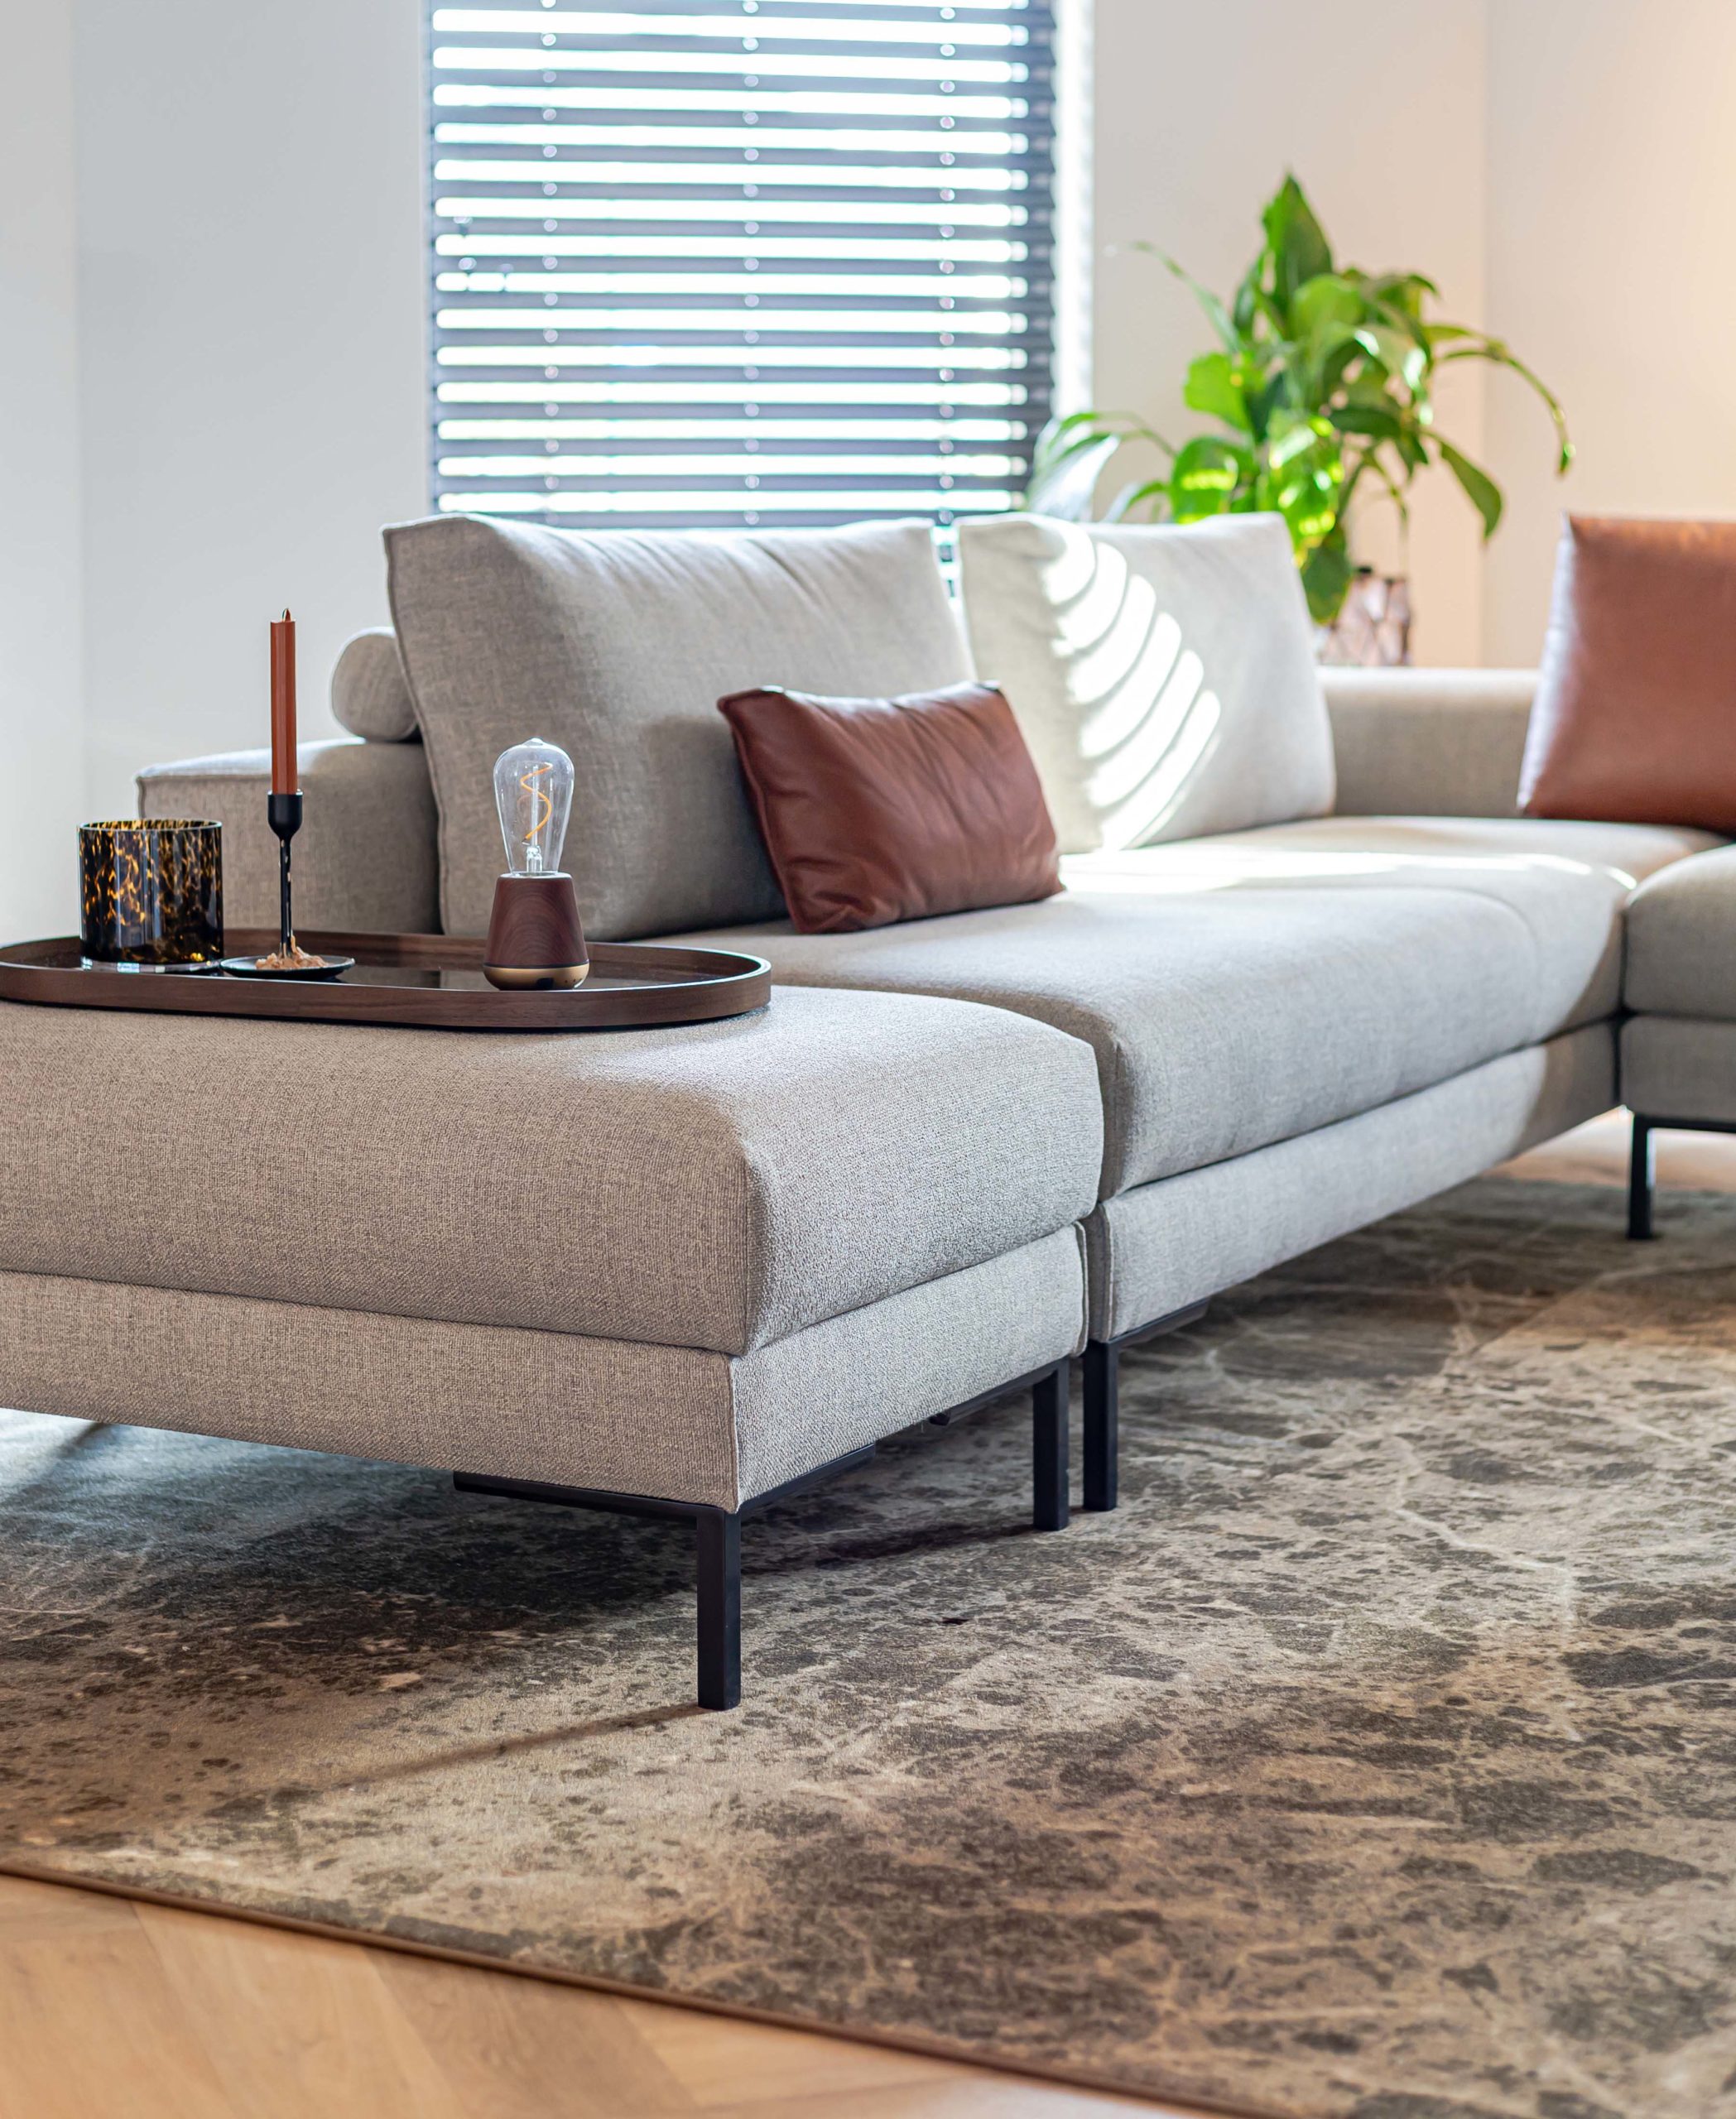 Hoekbank Aikon Lounge van Design on Stock is een comfortabele bank met een heerlijk comfort. De Aikon Lounge hoekbank is een geliefd model in de collectie